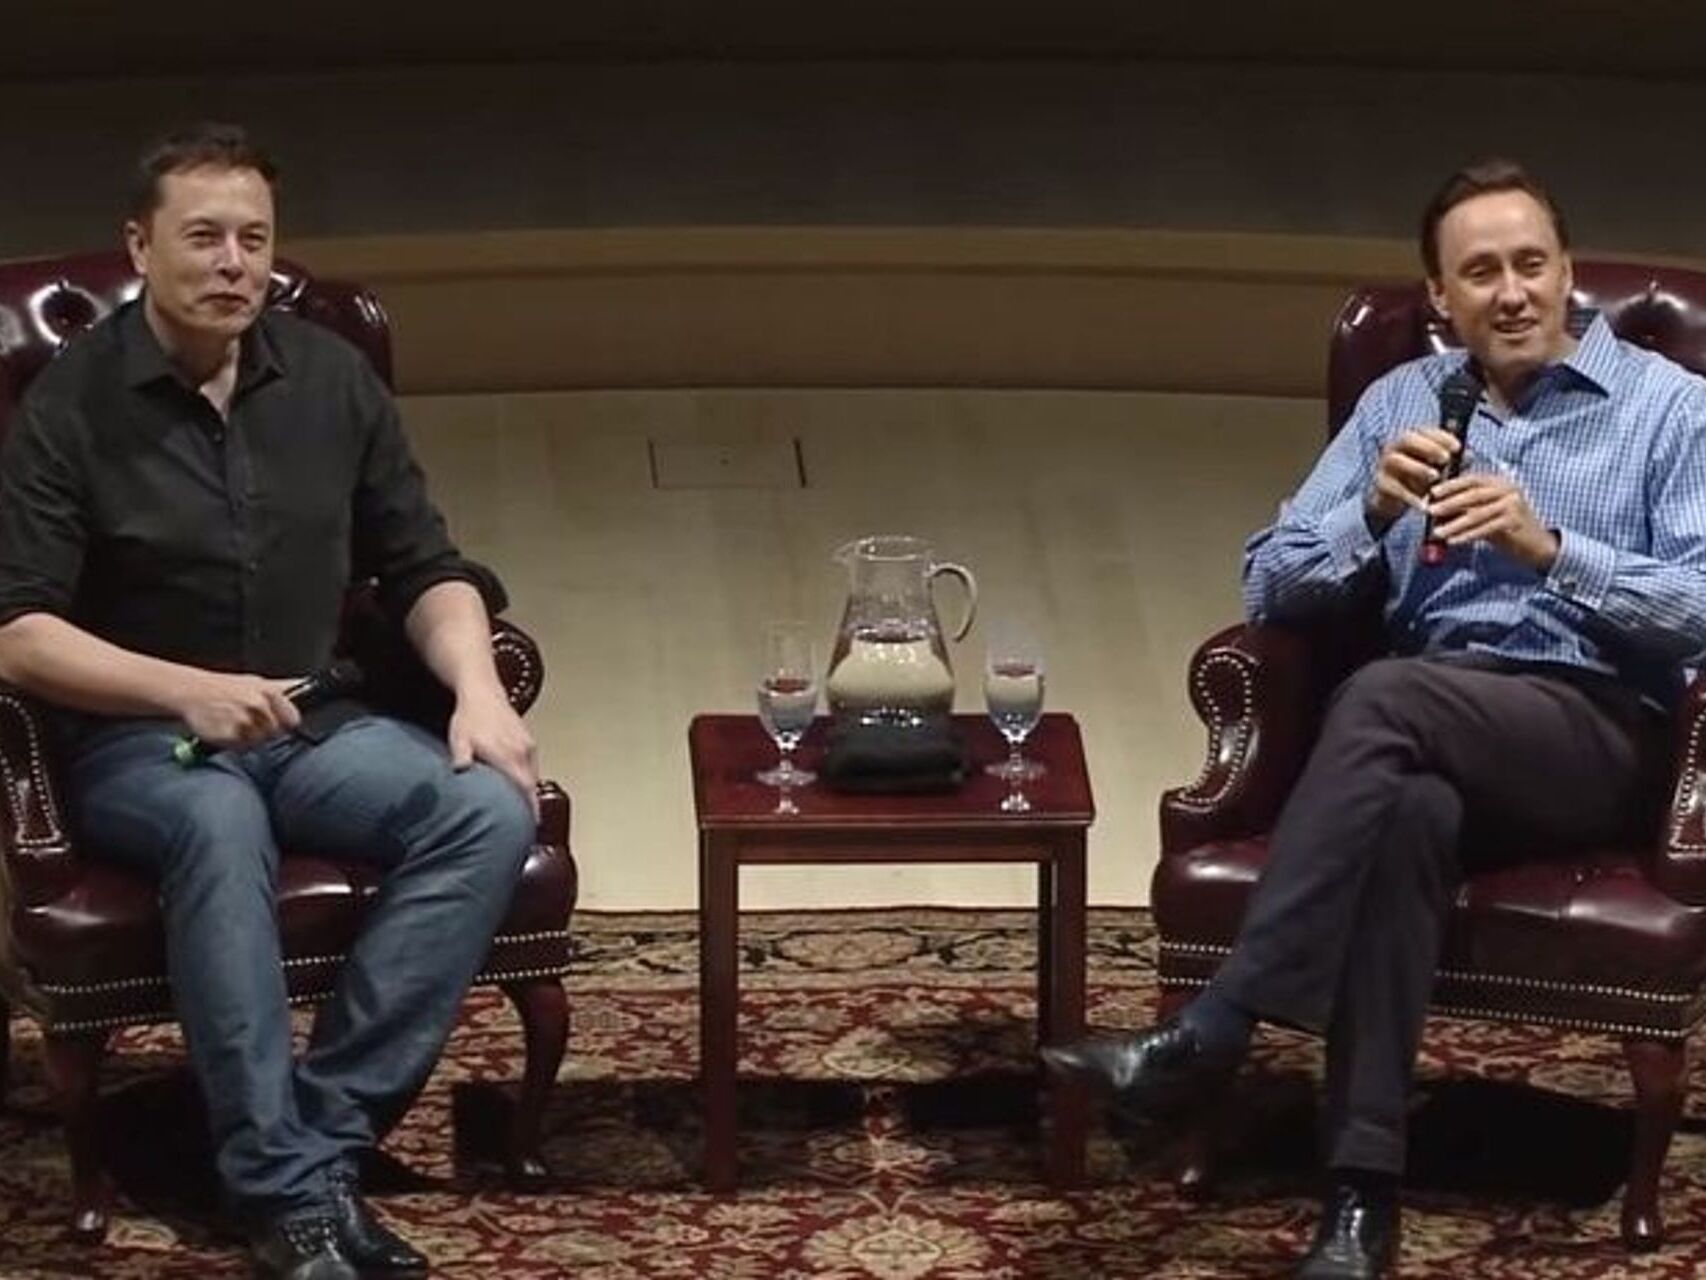 Samtal milli hugsjónamannsins Elon Musk og hins fræga fjárfestis Steve Jurvetson